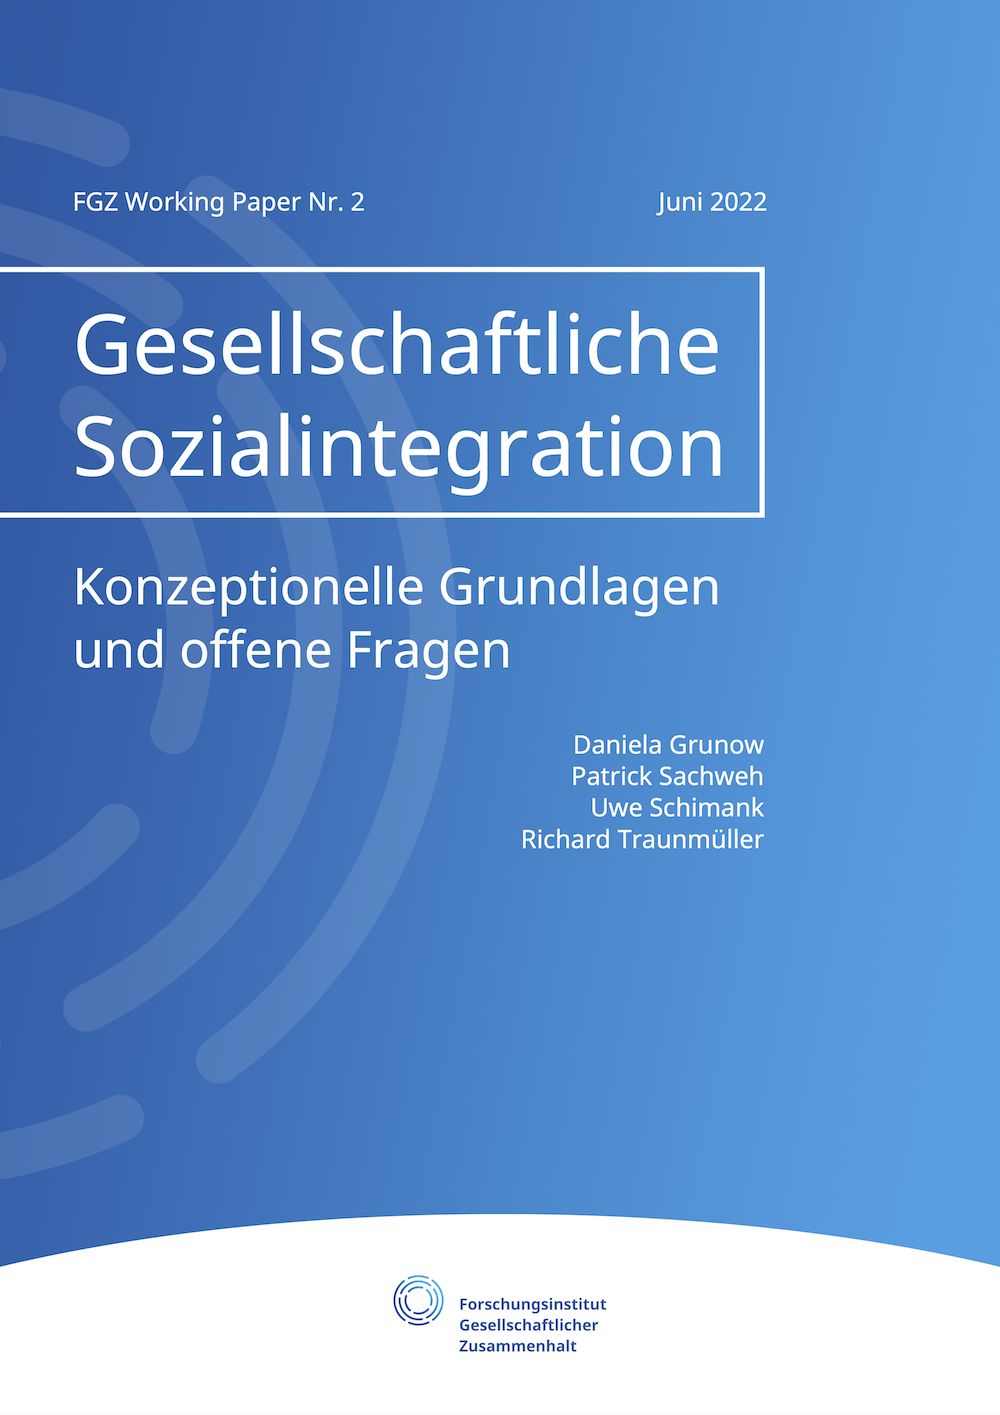 Gesellschaftliche Sozialintegration. Konzeptionelle Grundlagen und offene Fragen. FGZ Working Paper Nr. 2